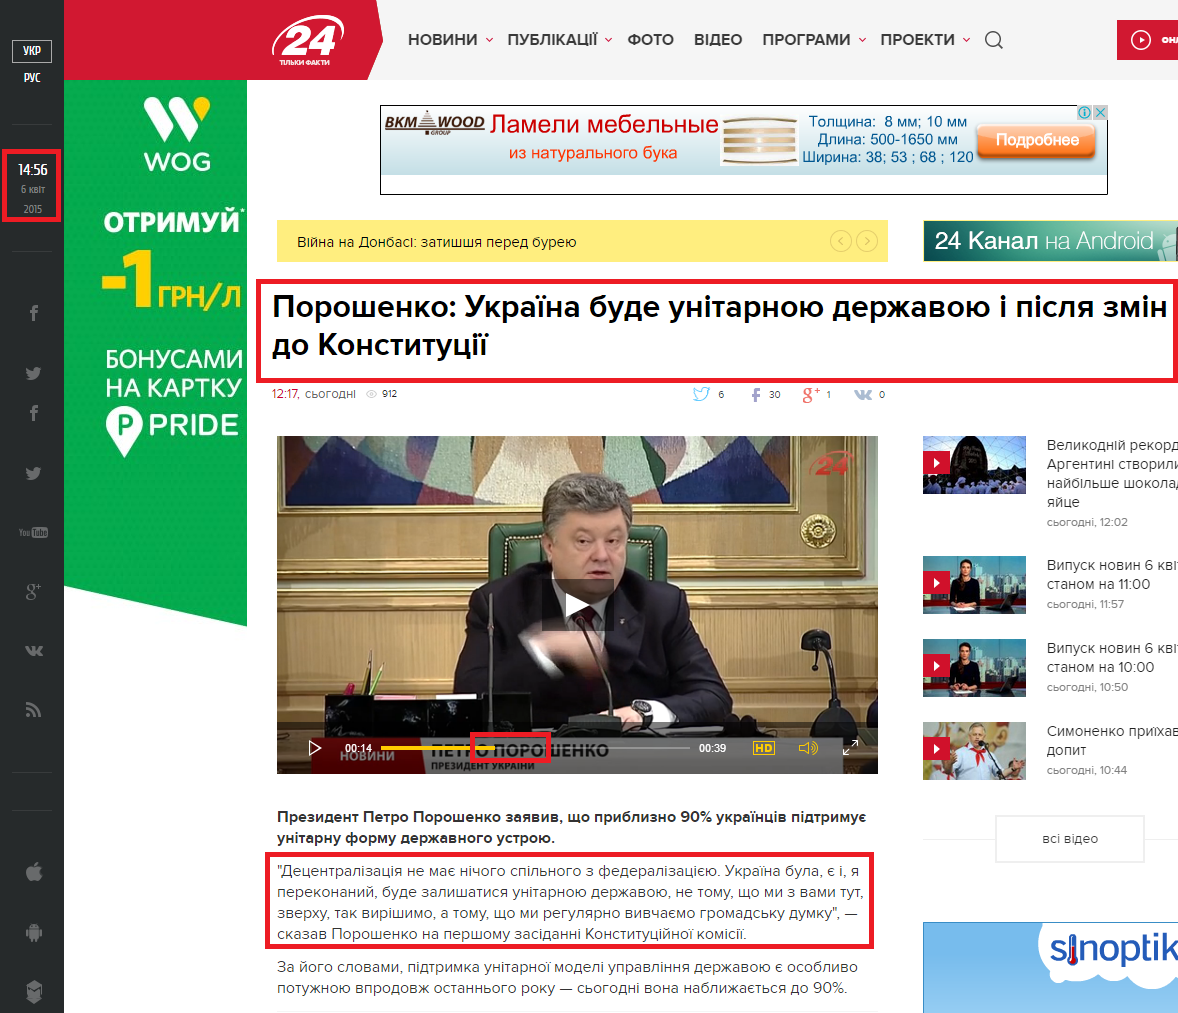 http://24tv.ua/news/showNews.do?poroshenko_ukrayina_bude_unitarnoyu_derzhavoyu_i_pislya_zmin_do_konstitutsiyi&objectId=562349&utm_source=ukrnet&utm_medium=cpm&utm_campaign=ukrnetvideo